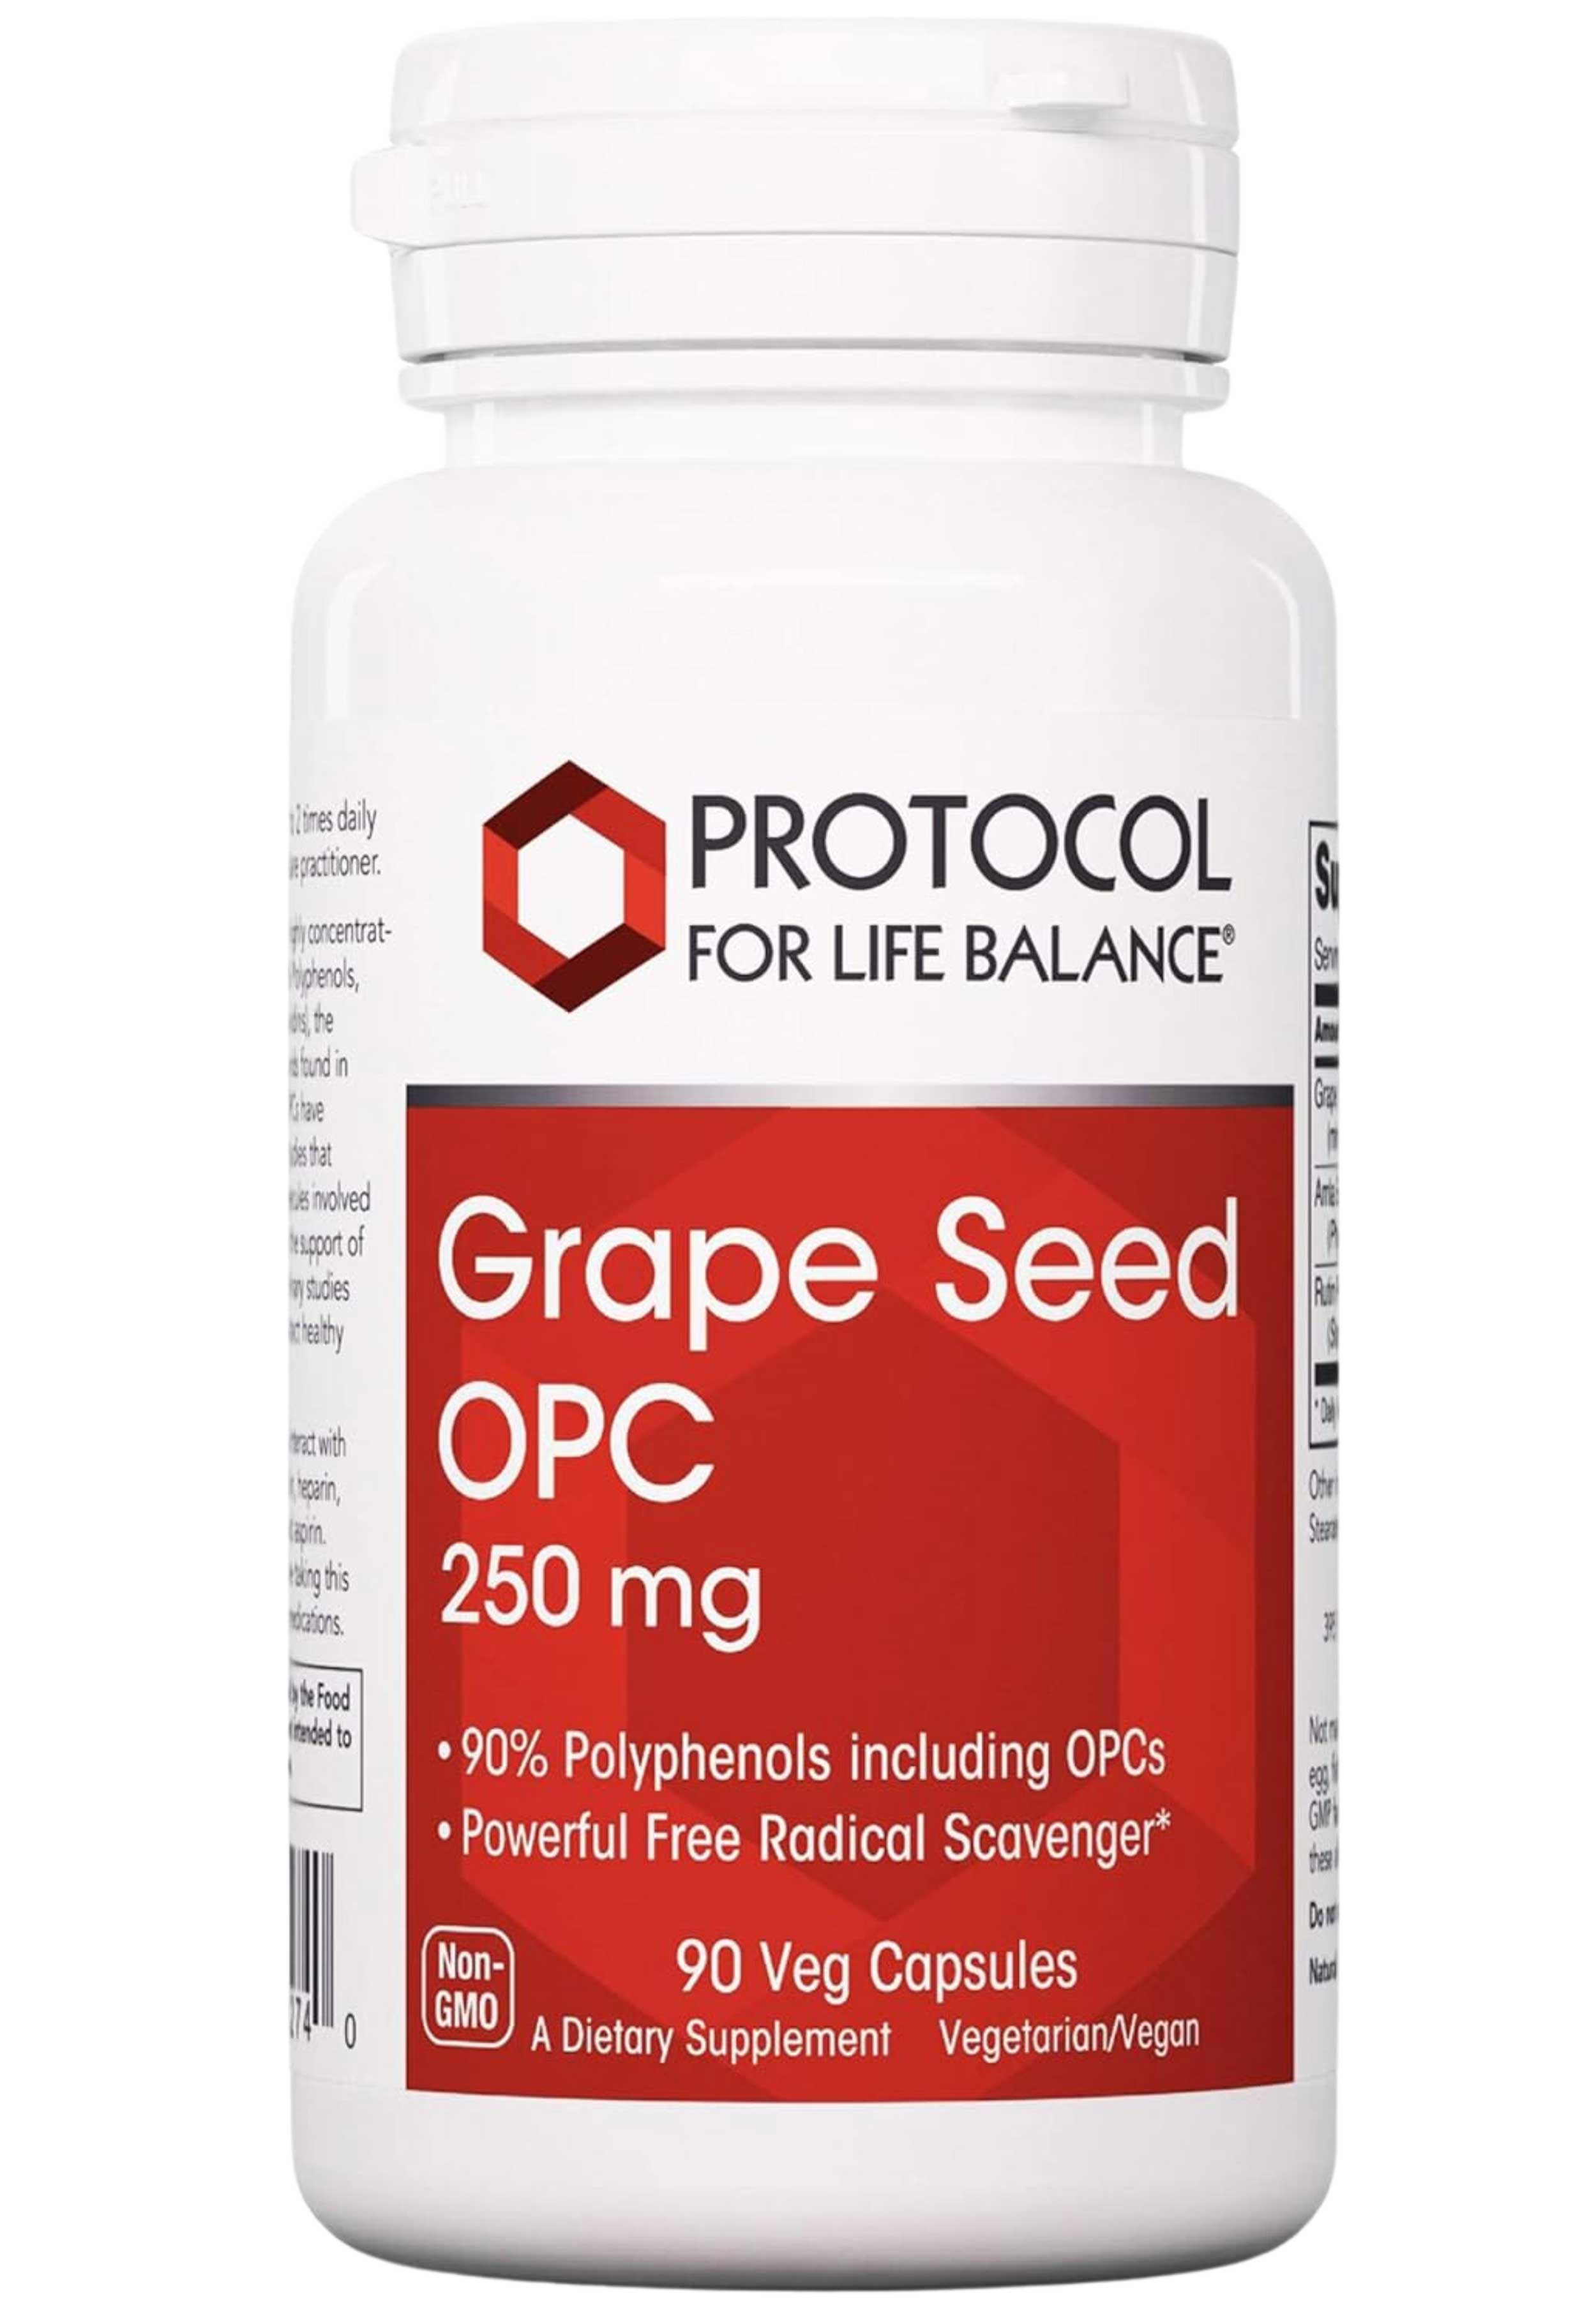 Protocol for Life Balance Grape Seed OPC